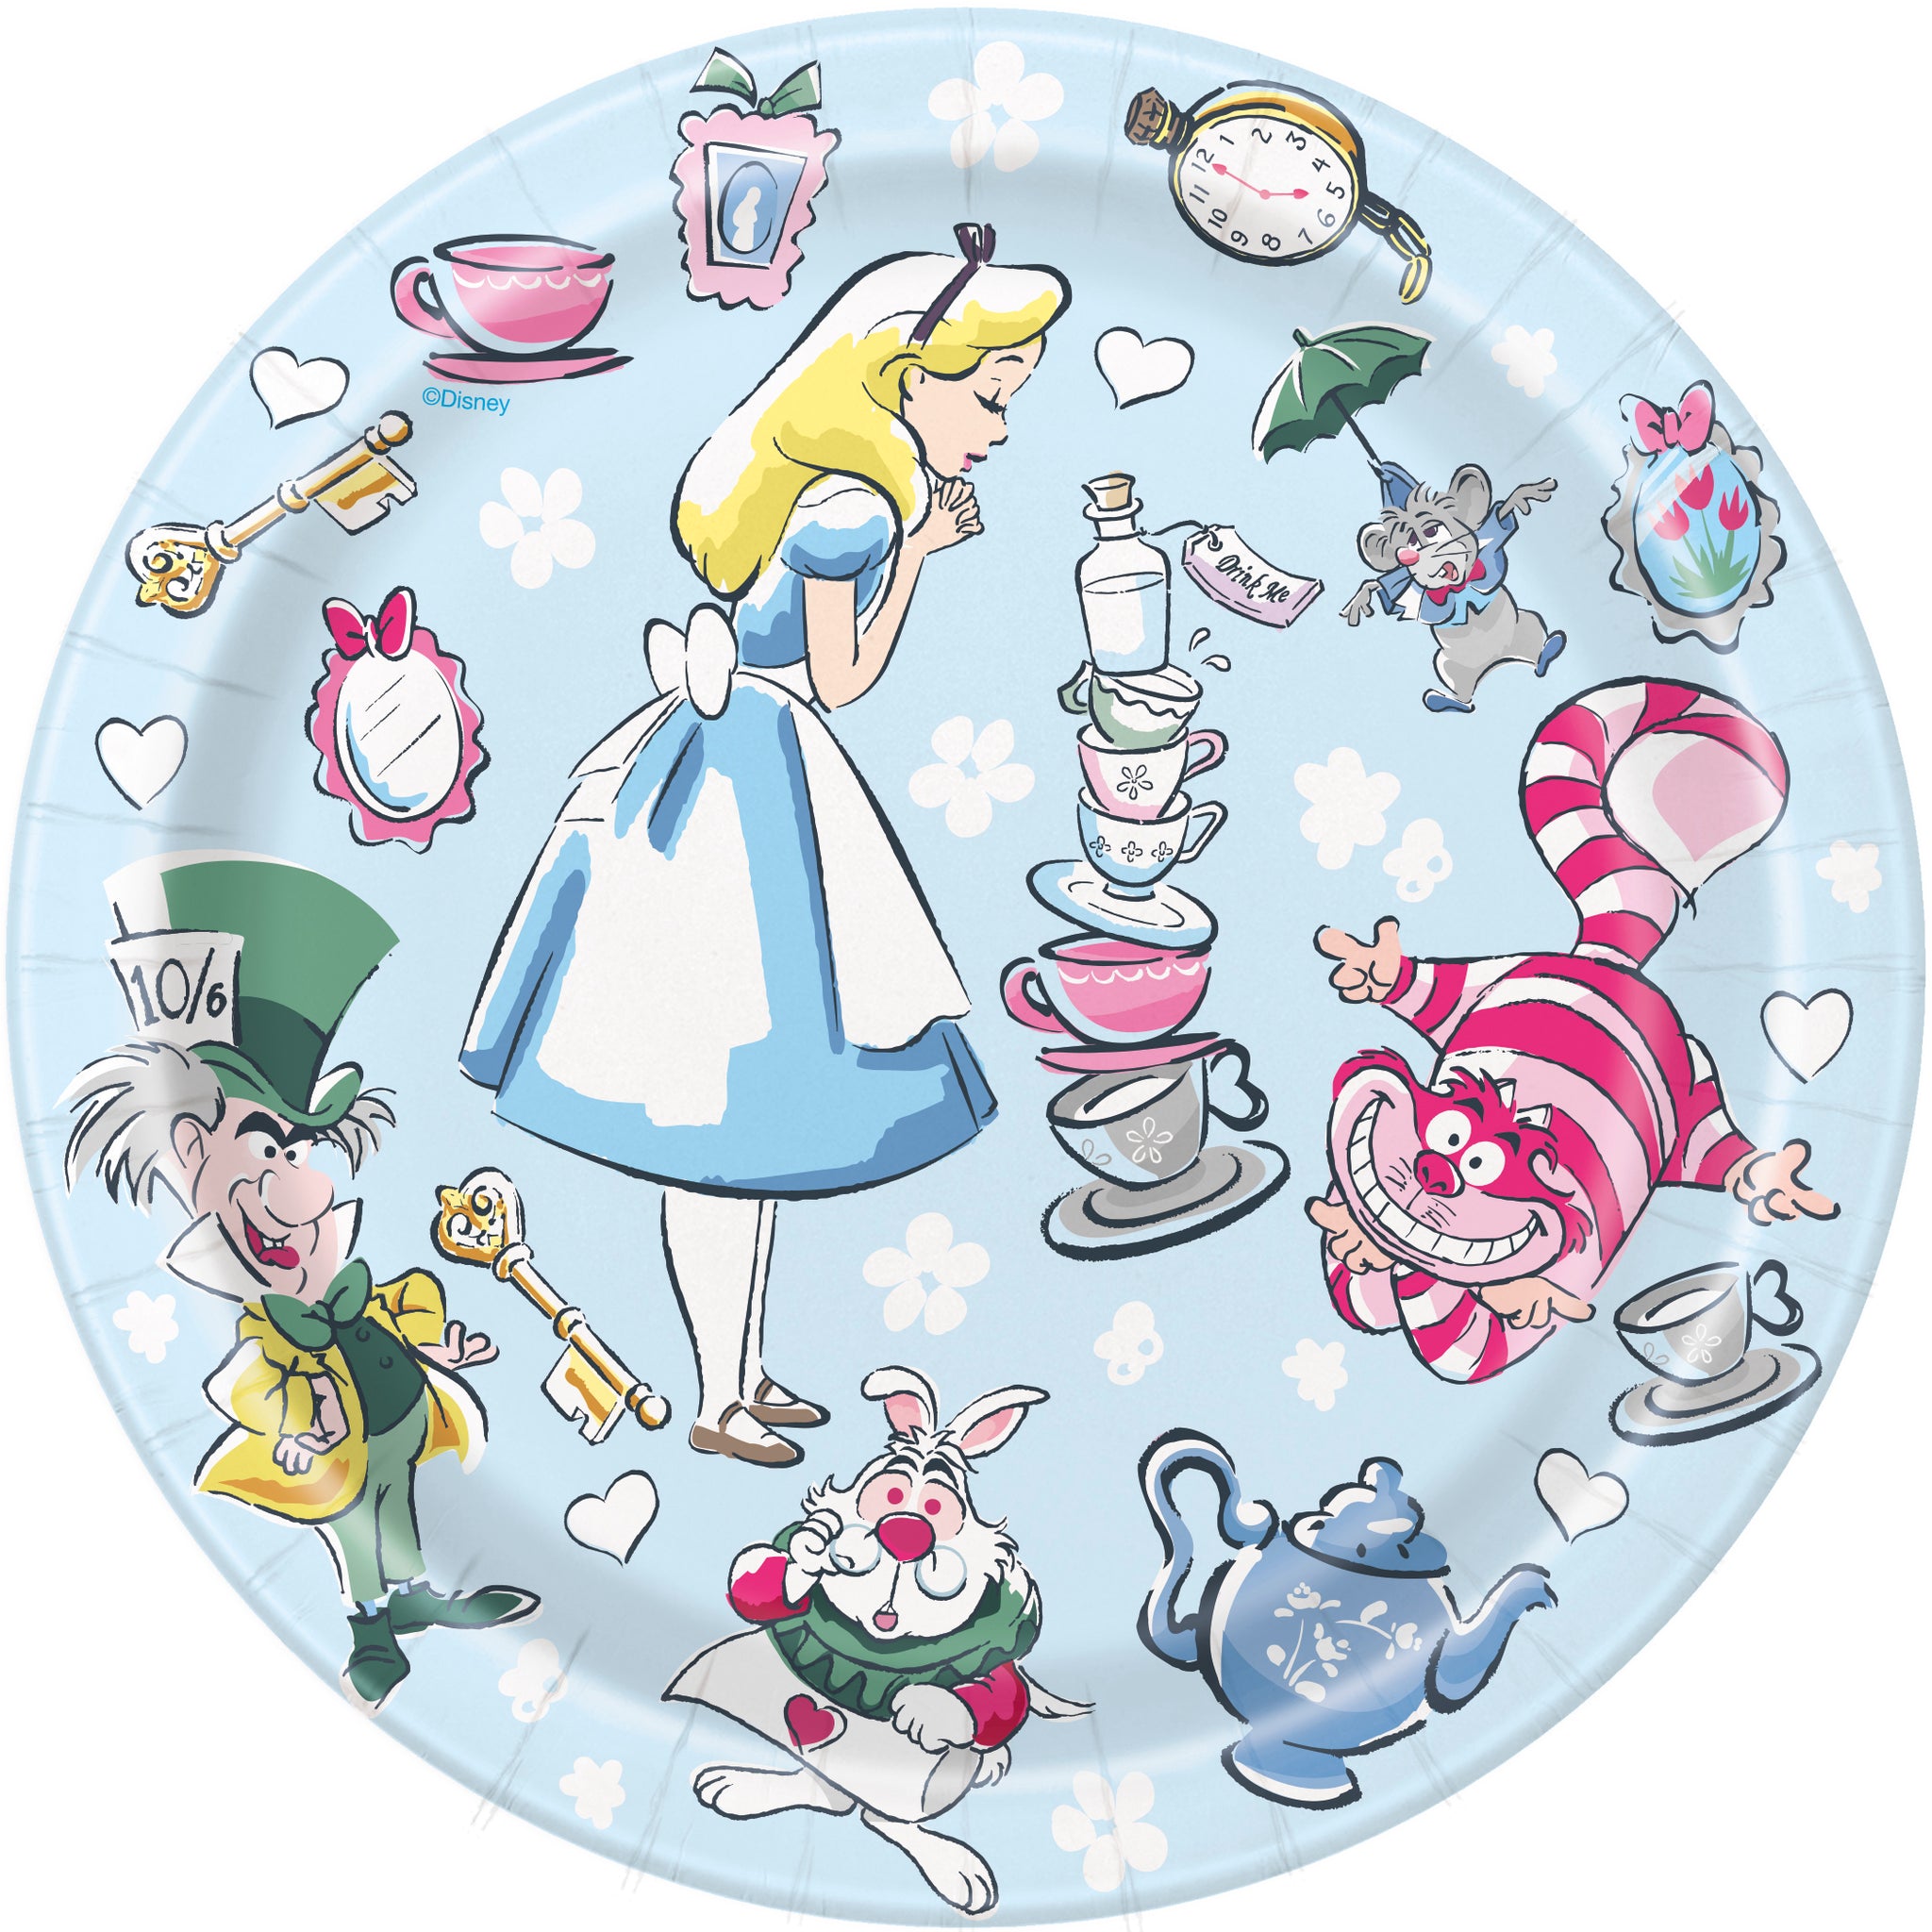 Alice in Wonderland Round 7" Dessert Plates, 8ct